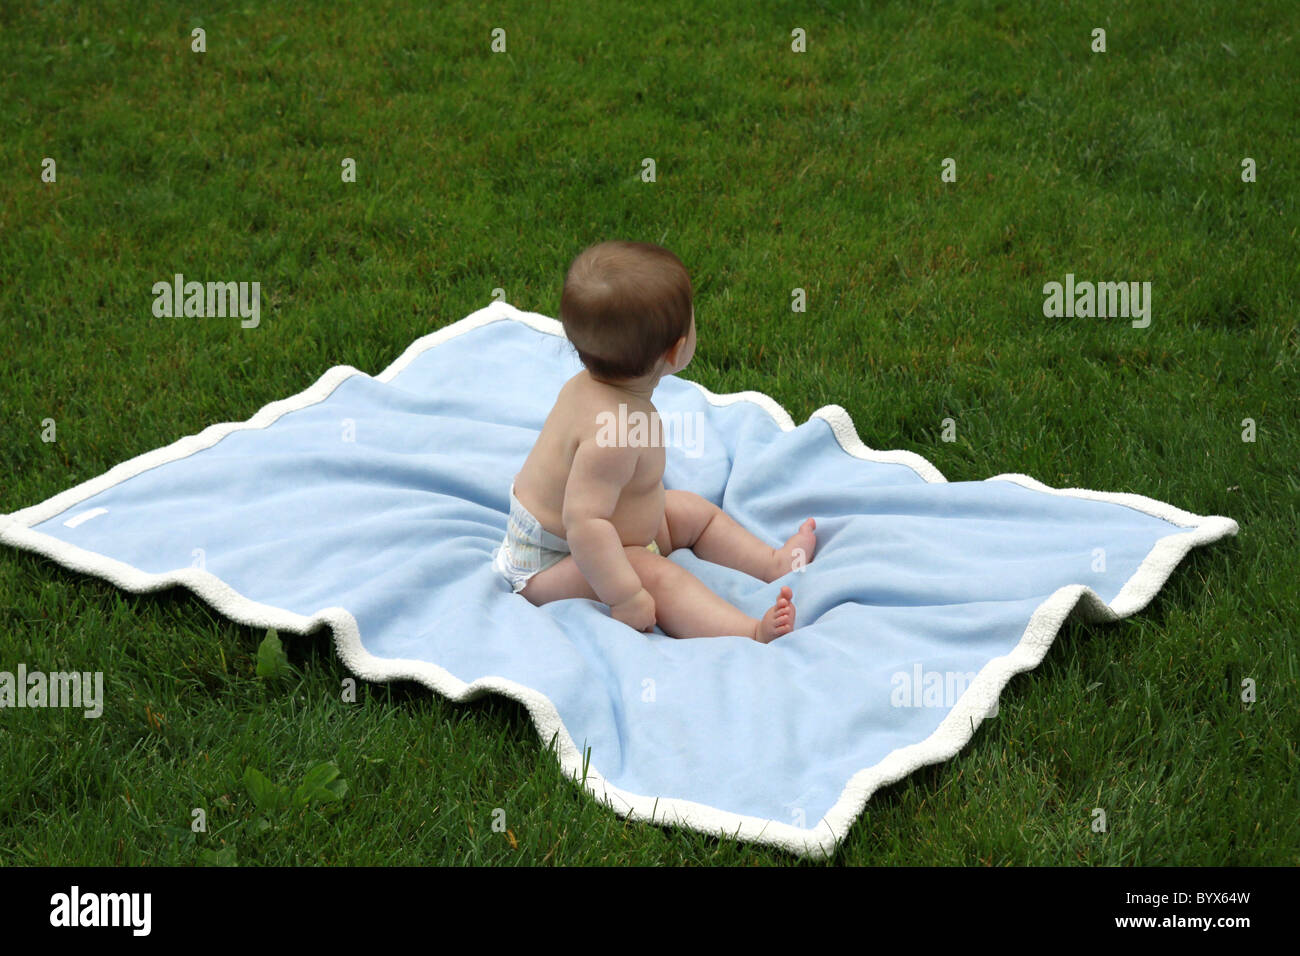 Ein Baby auf einer blauen Decke im grünen Rasen, im Rückblick. Stockfoto